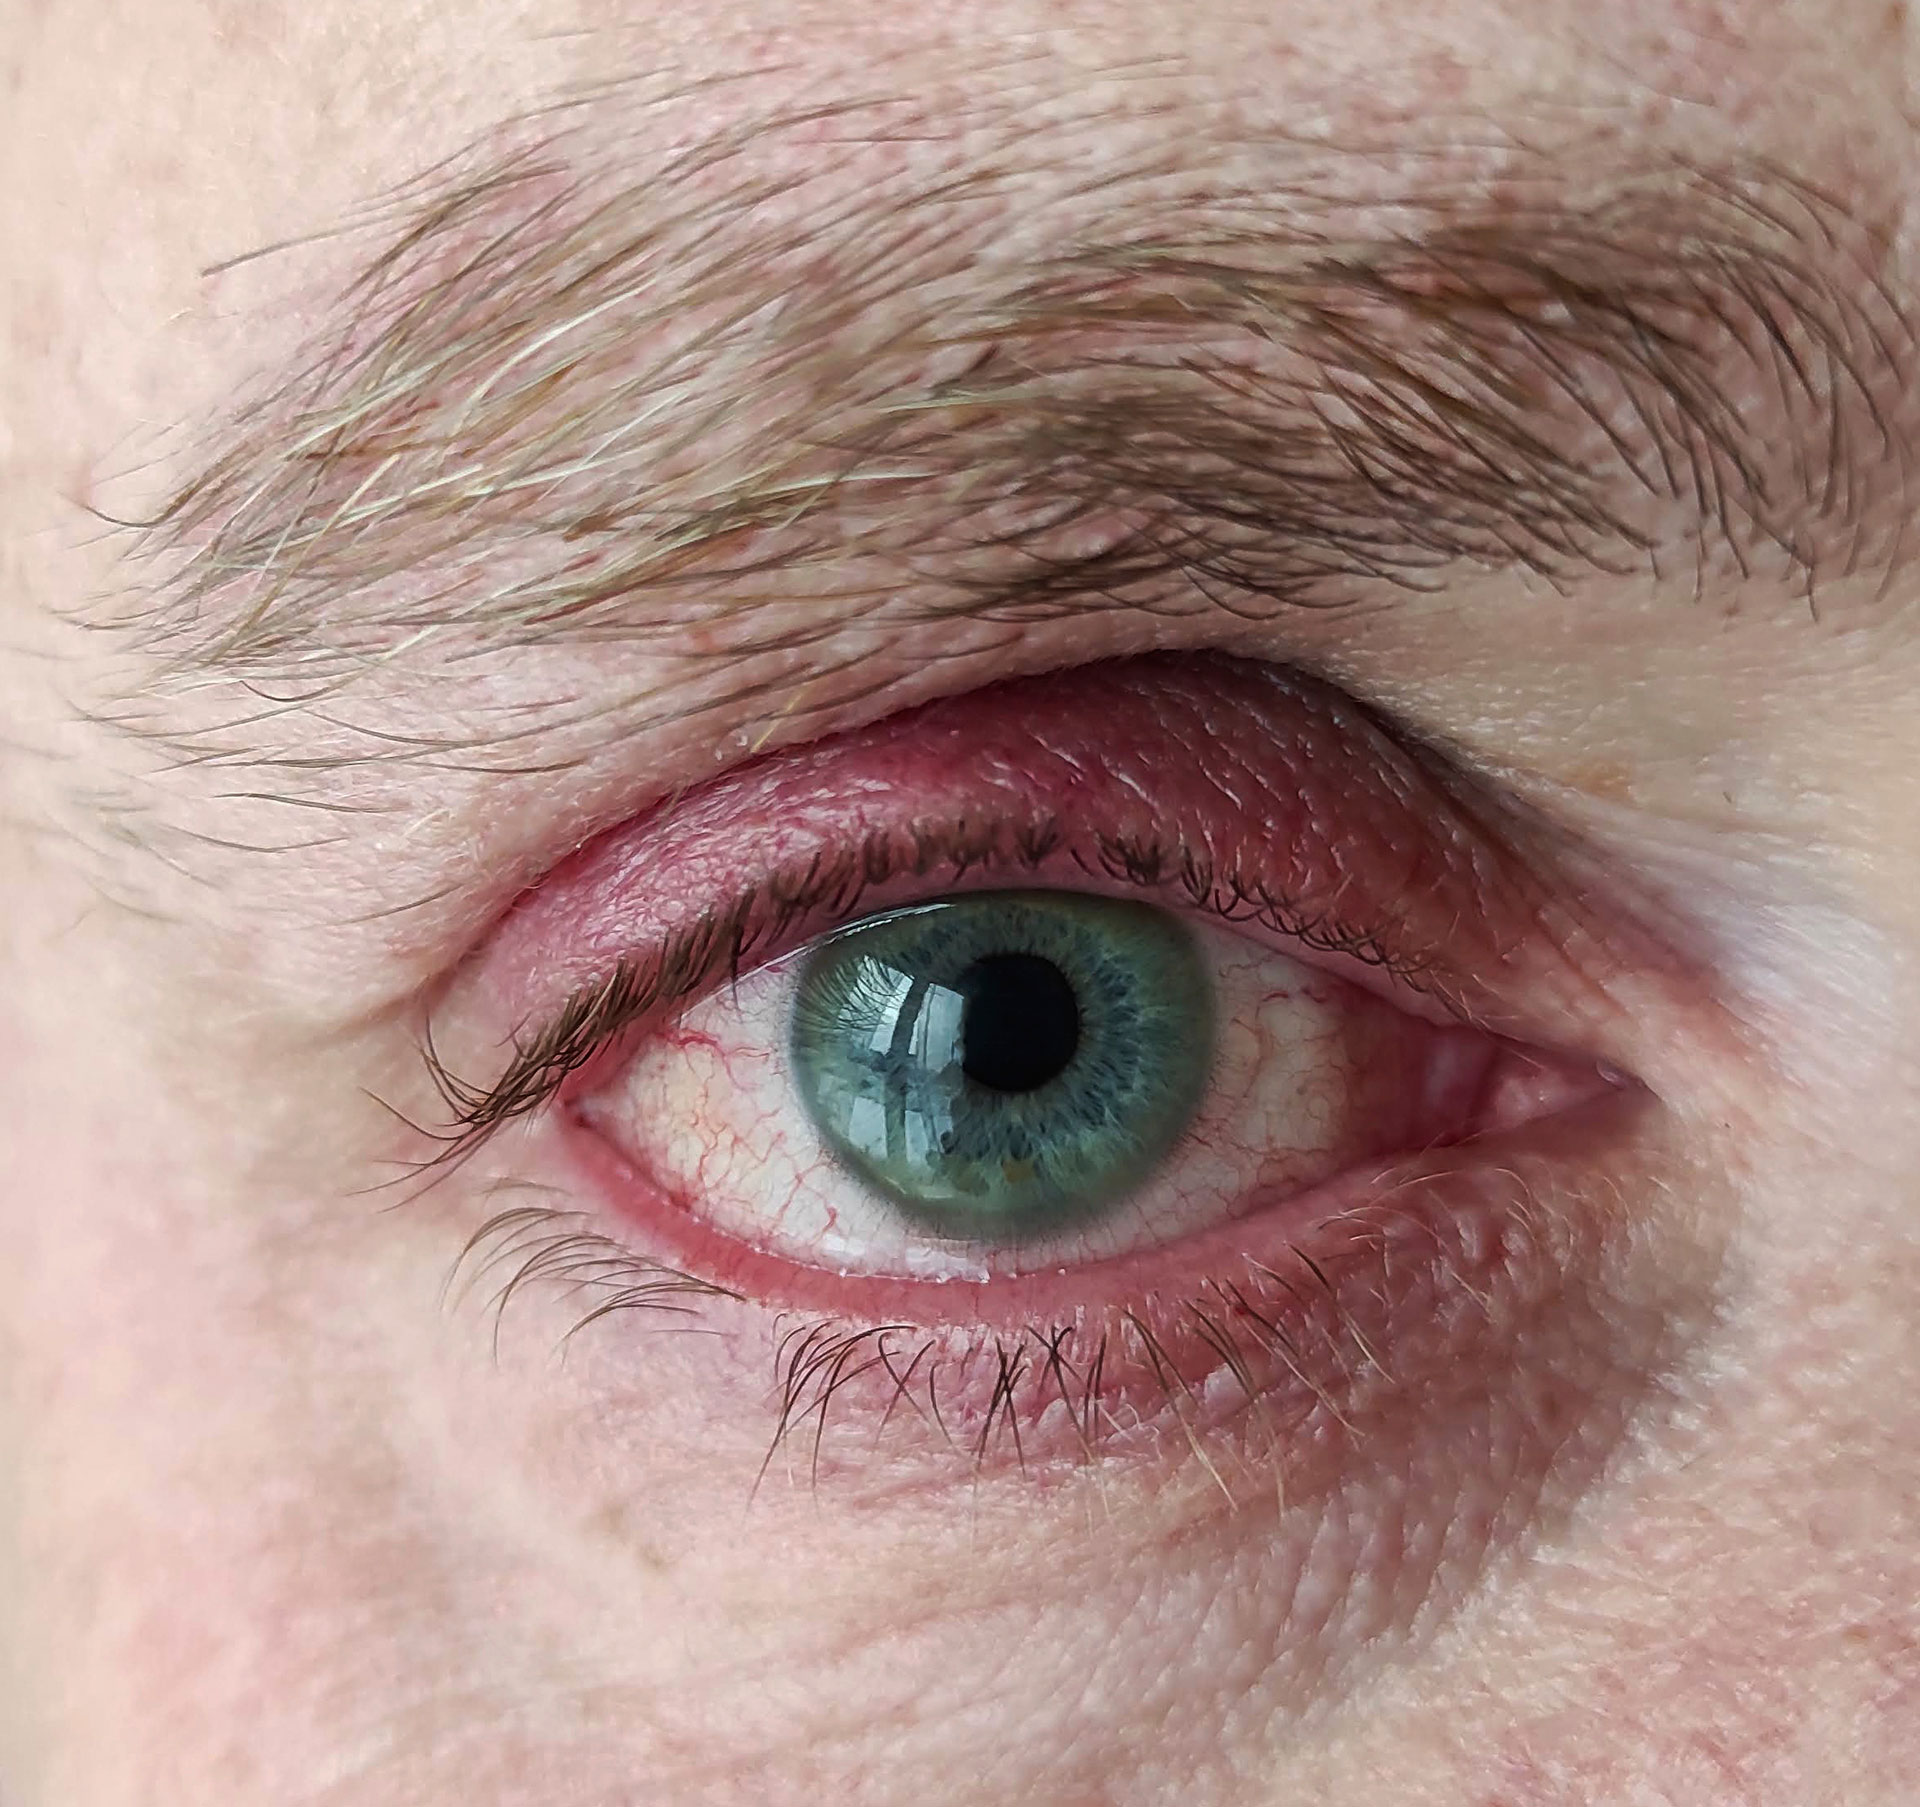 Blepharitis eye condition